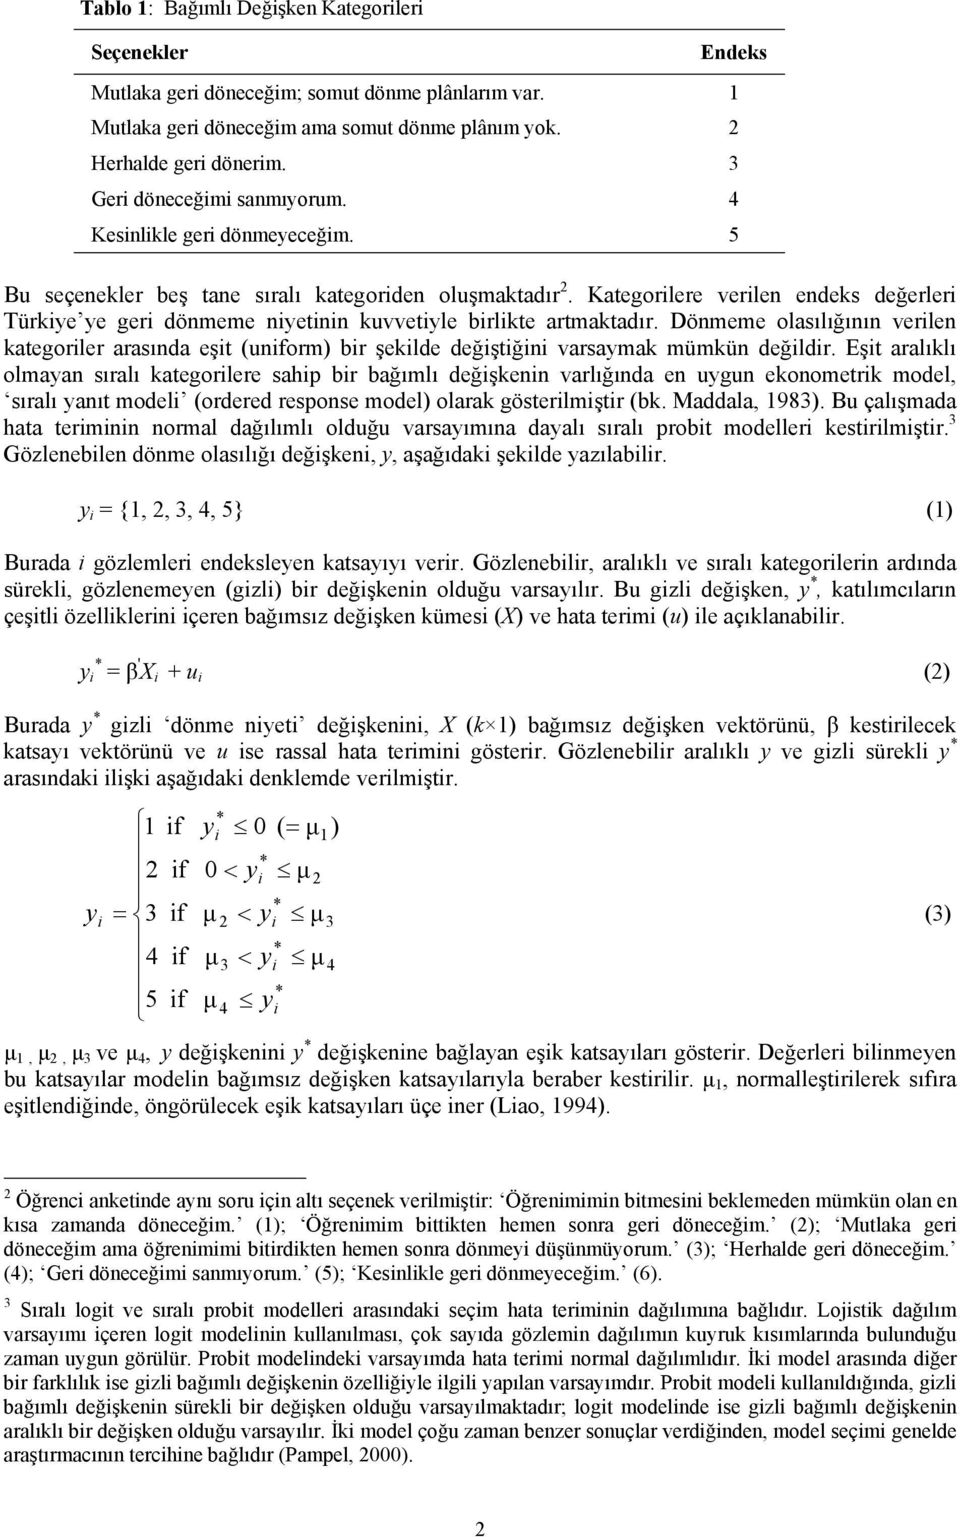 Eşt aralıklı olmayan sıralı kategorlere sahp br bağımlı değşkenn varlığında en uygun ekonometrk model, sıralı yanıt model (ordered response model) olarak gösterlmştr (bk. Maddala, 1983).